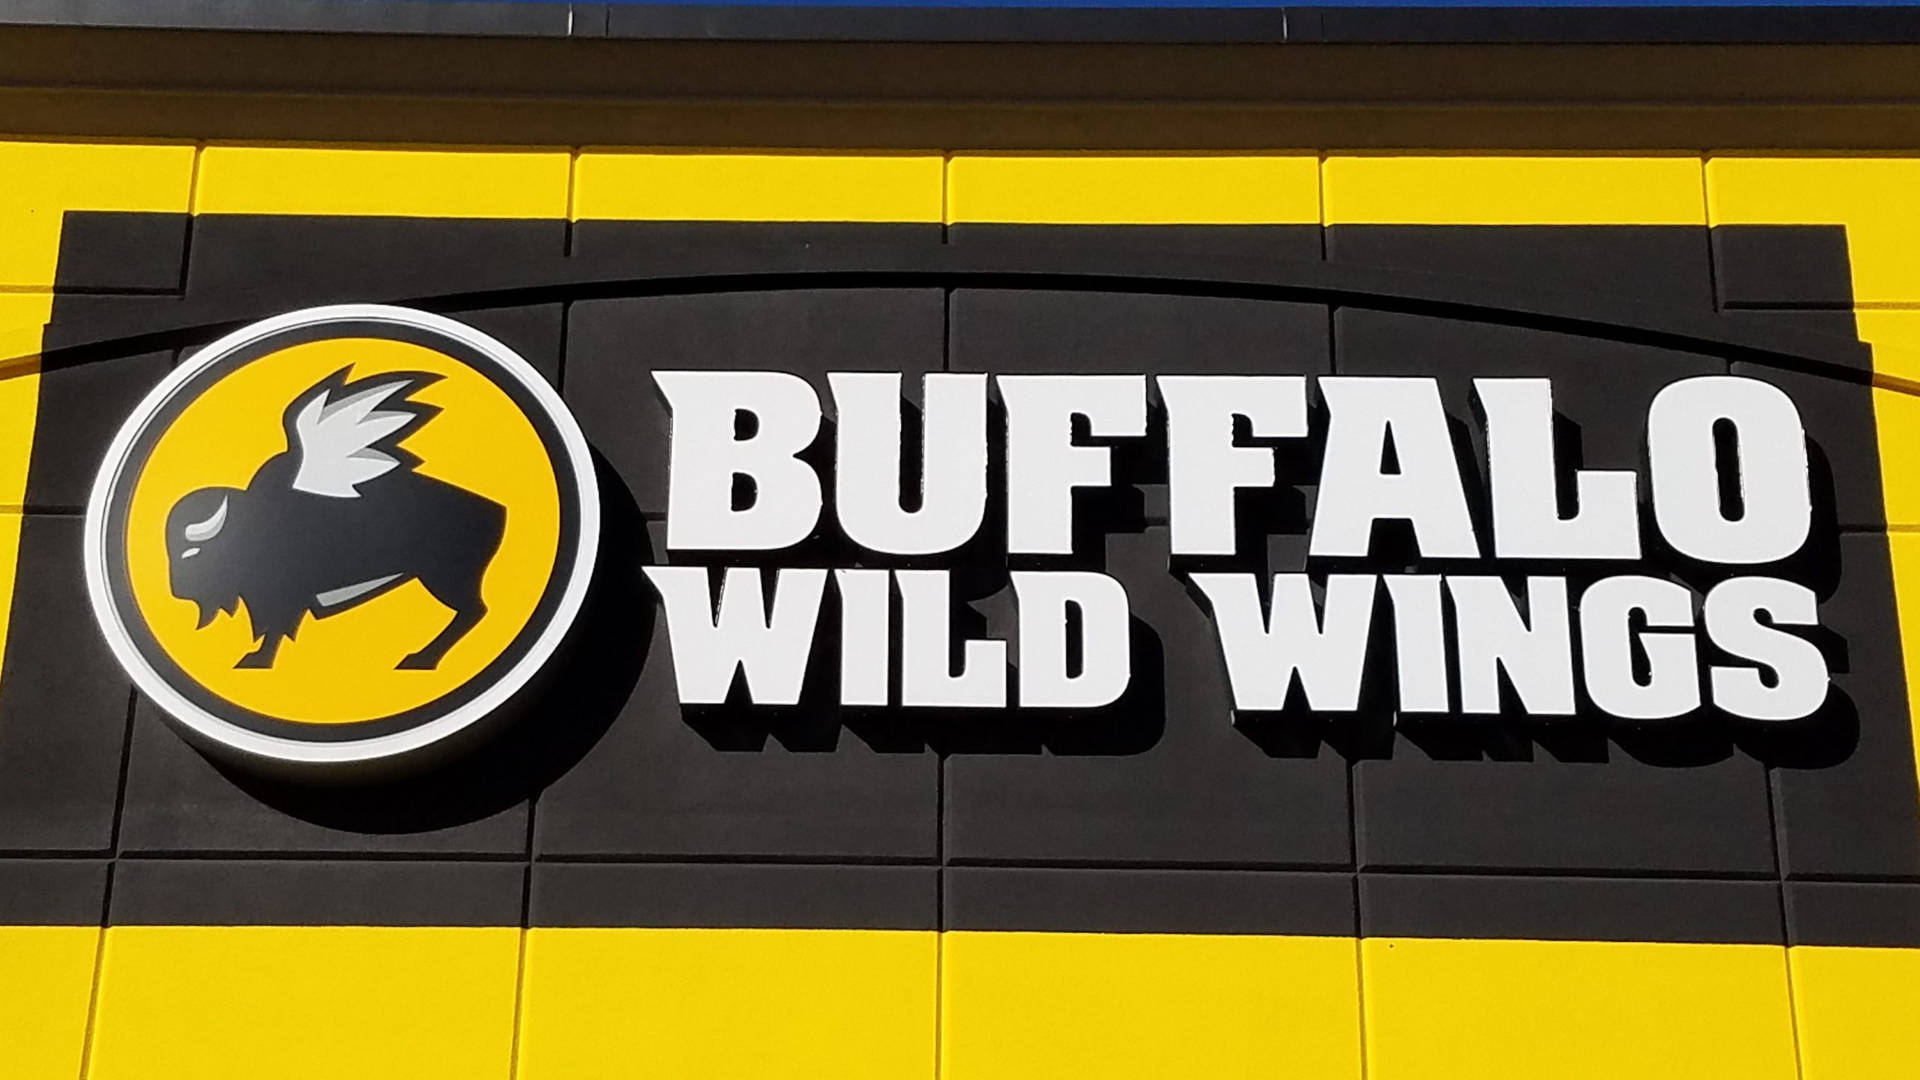 Buffalo Wild Wings Restaurant Signage Background